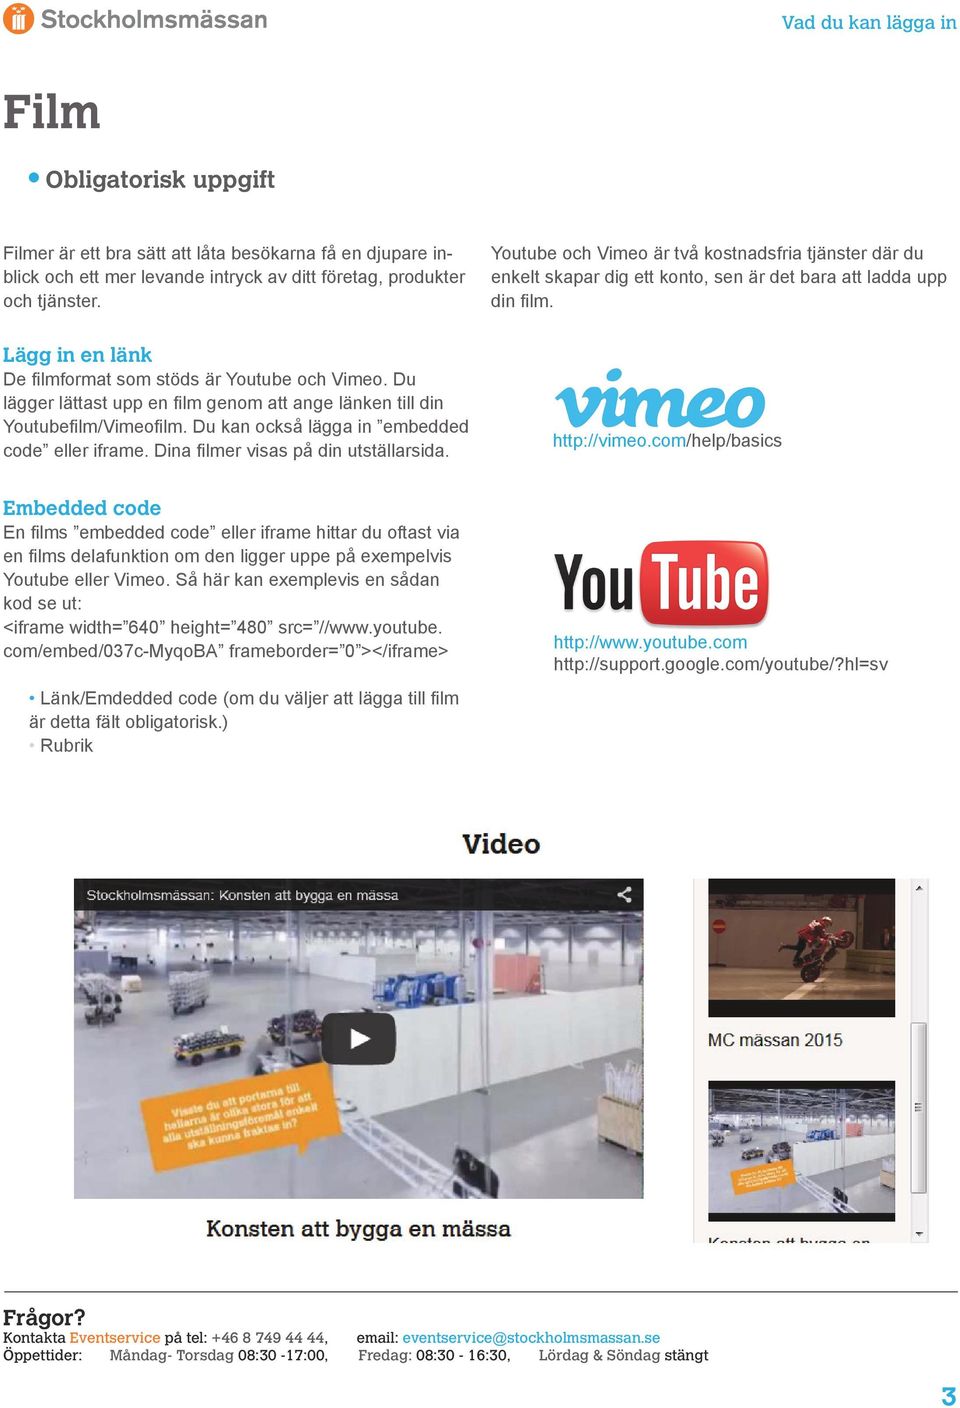 Du lägger lättast upp en film genom att ange länken till din Youtubefilm/Vimeofilm. Du kan också lägga in embedded code eller iframe. Dina filmer visas på din utställarsida. http://vimeo.